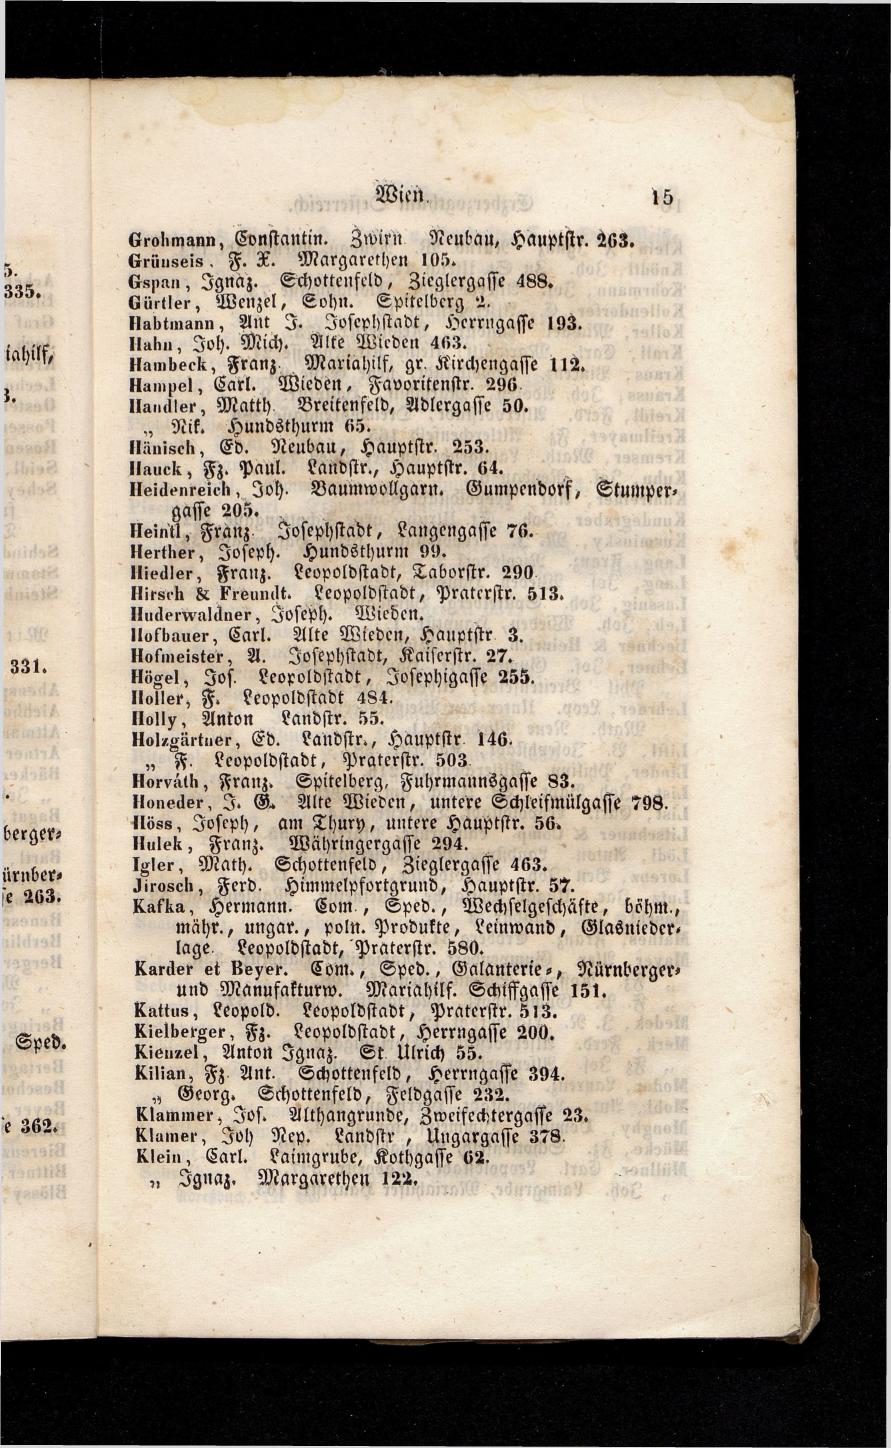 Grosses Adressbuch der Kaufleute. No. 13. Oesterreich ober u. unter der Enns 1844 - Seite 19